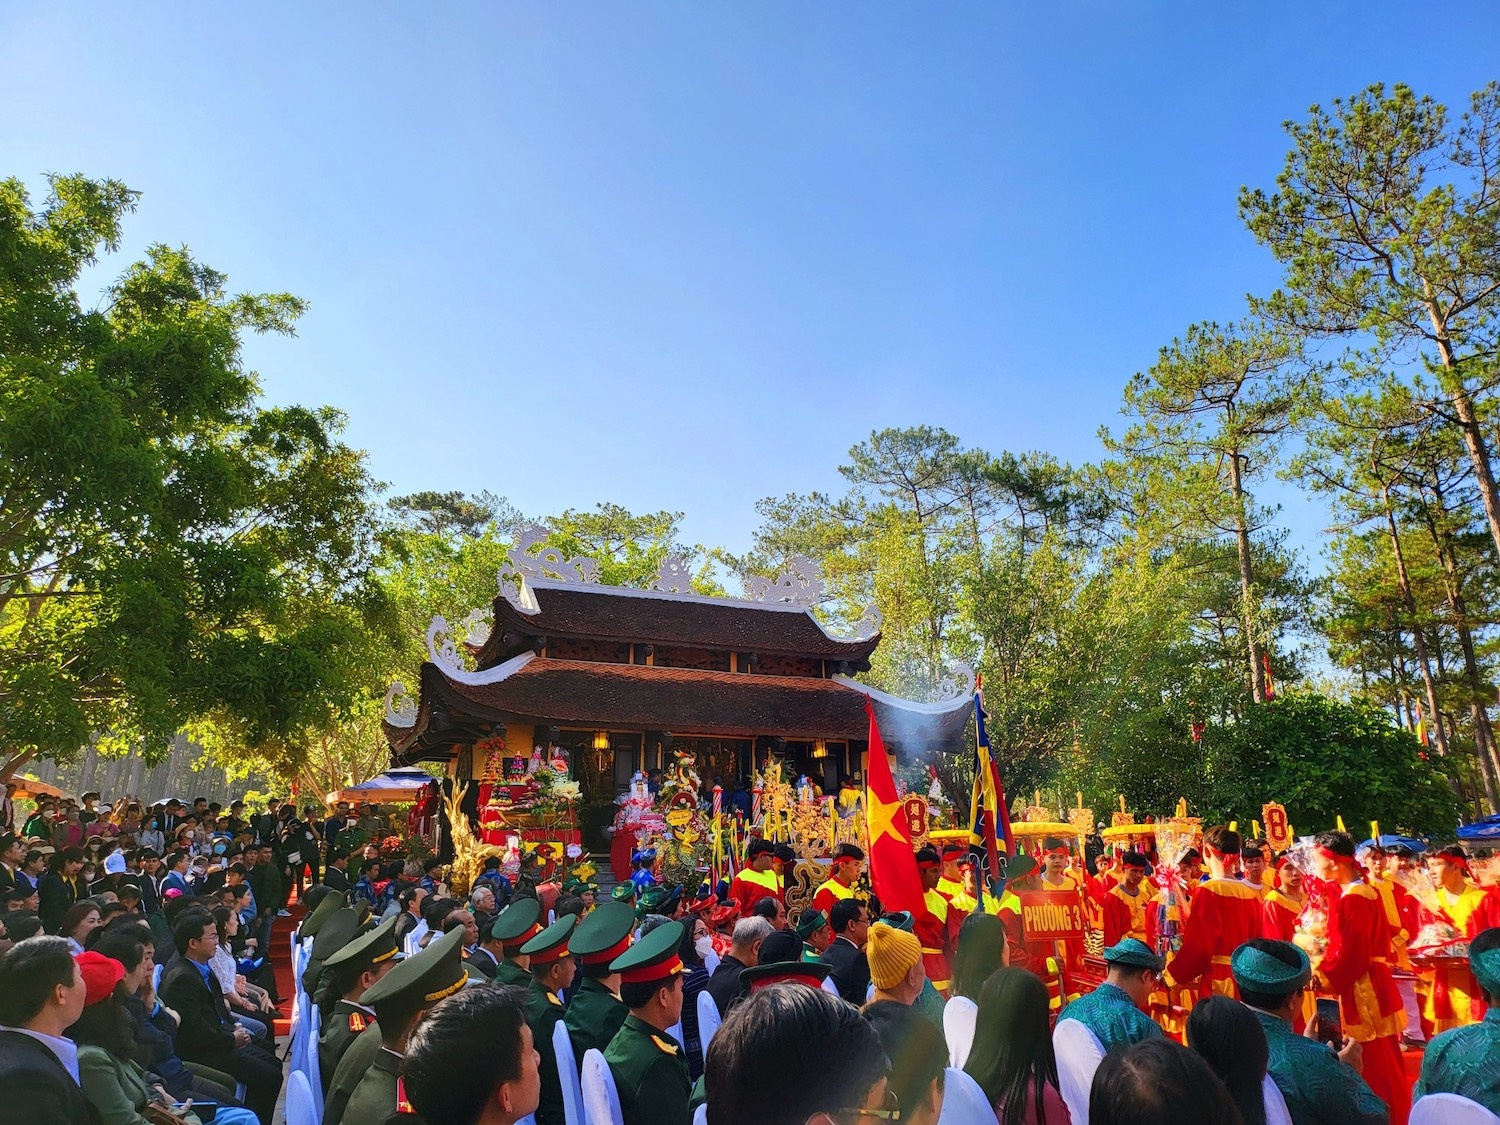 Hướng về cội nguồn, dâng hương tưởng nhớ vua Hùng tại Đền thờ Âu Lạc  tỉnh Lâm Đồng